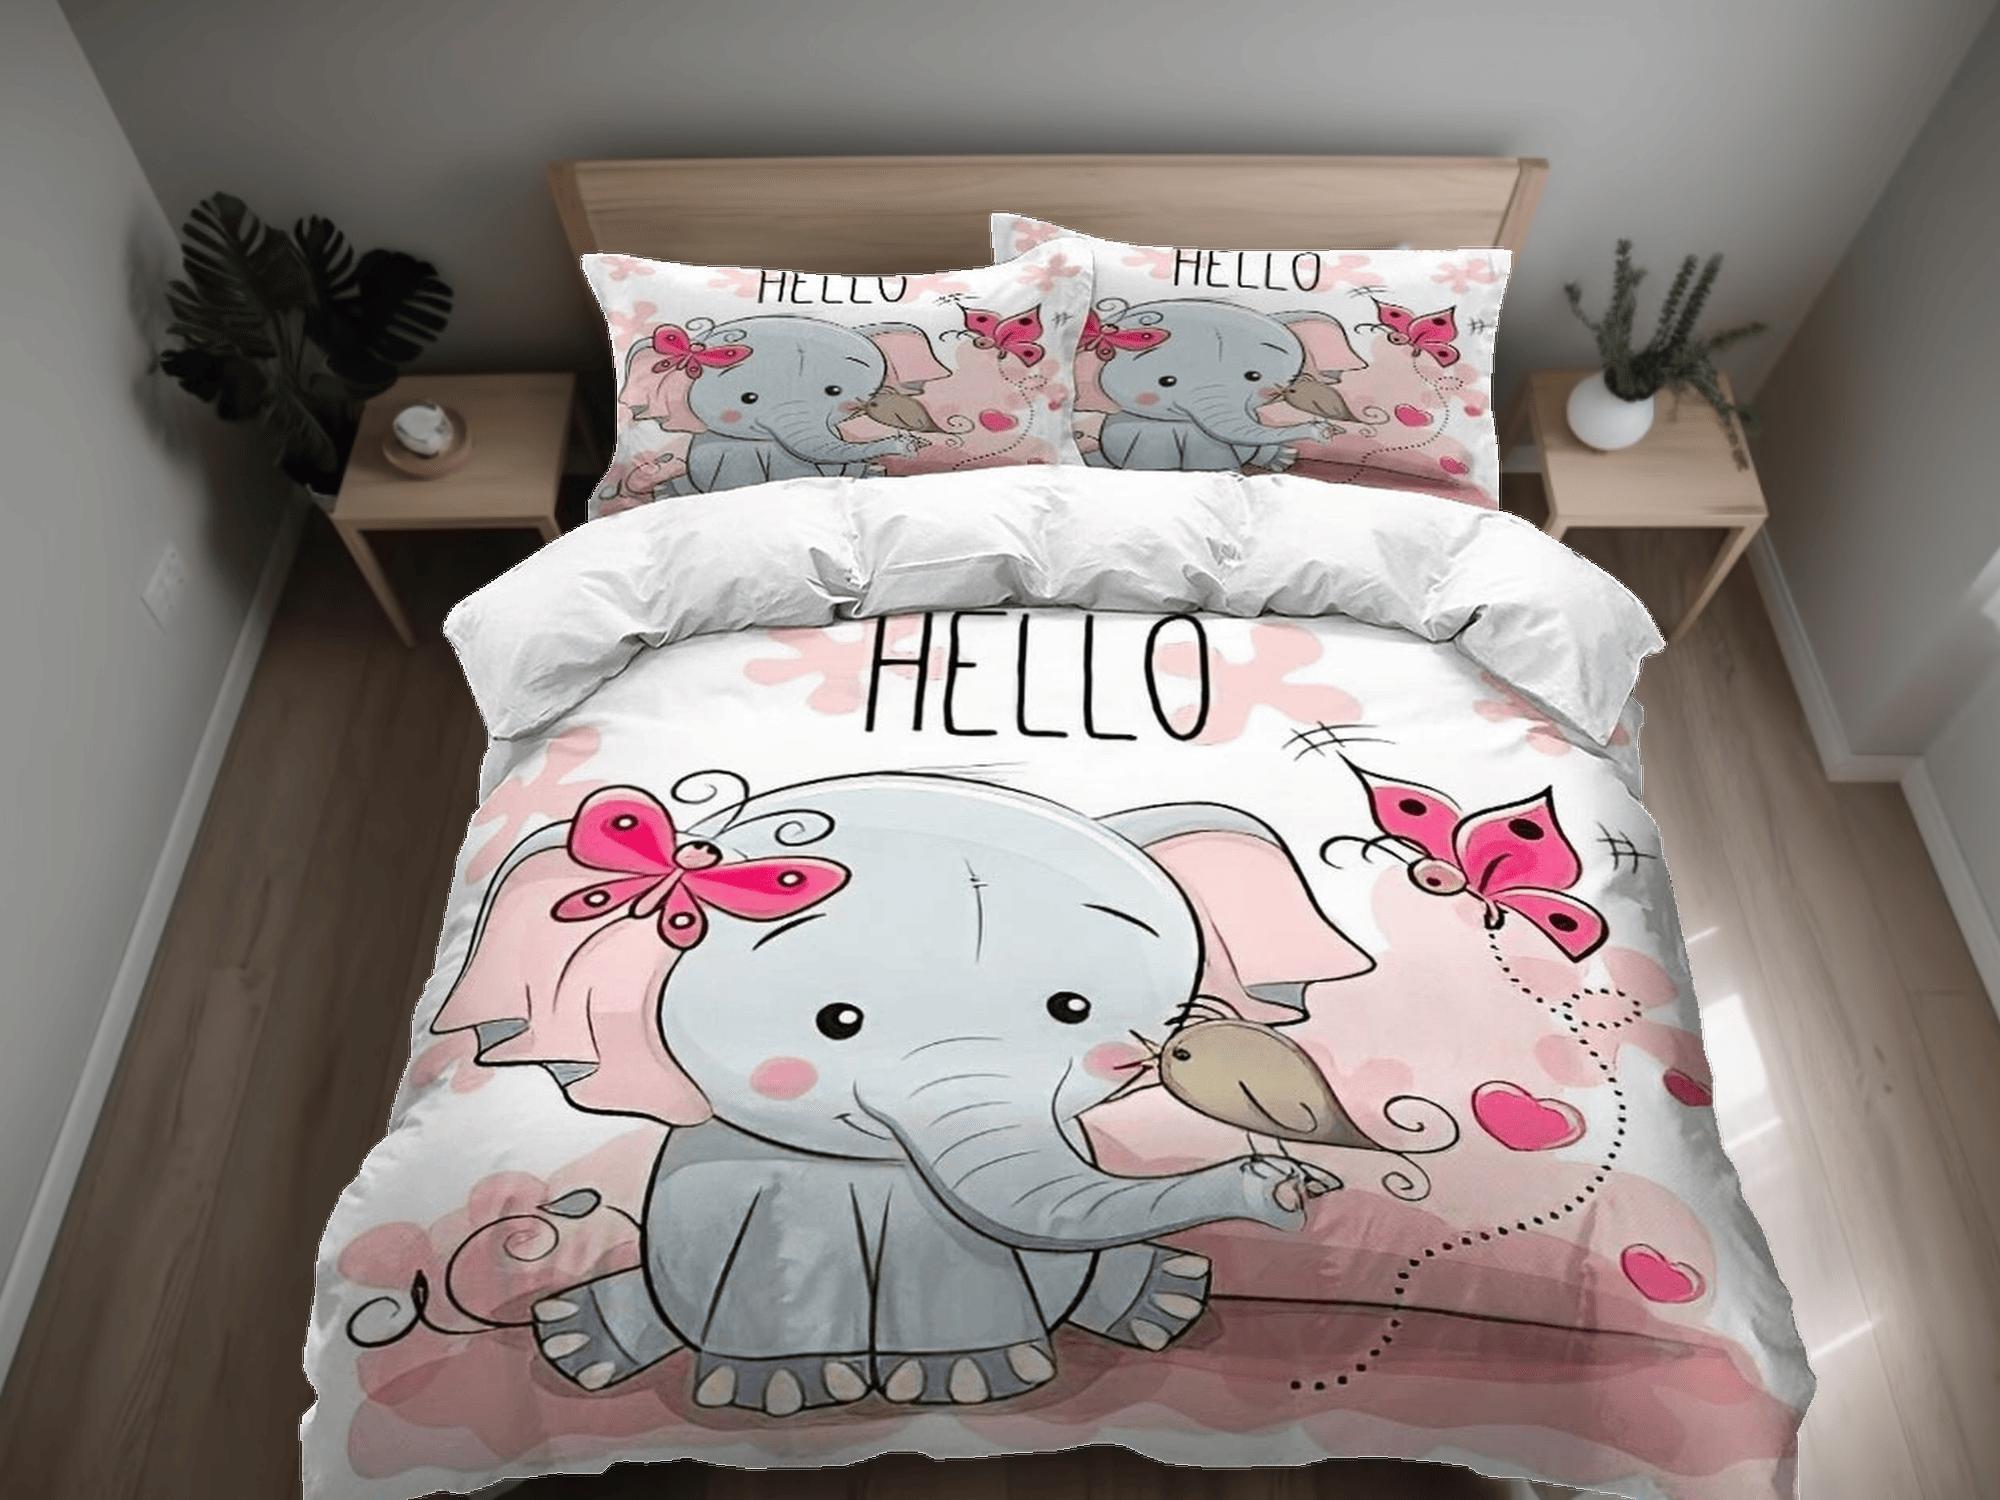 daintyduvet Hello elephant bedding cute duvet cover set, kids bedding full, nursery bed decor, elephant baby shower, girl toddler bedding